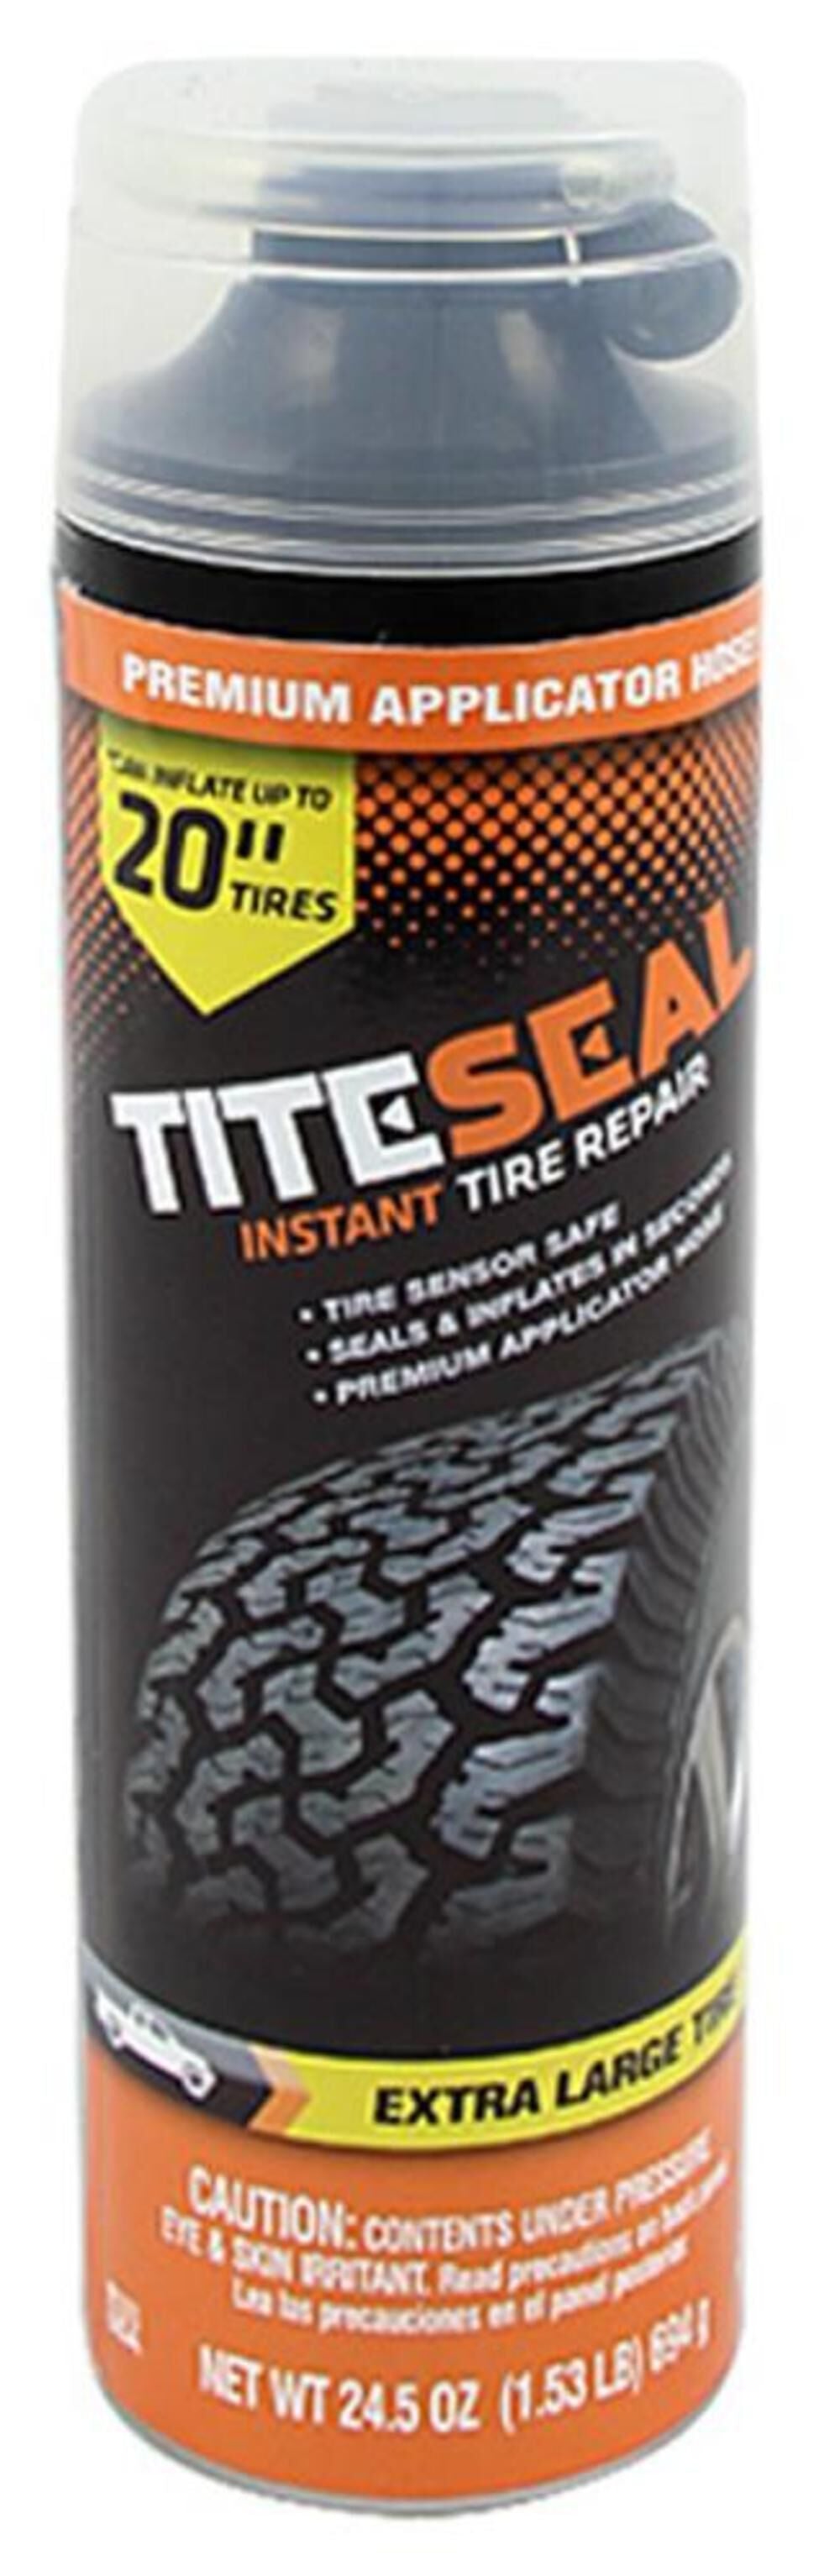 Instant Tire Repair Extra Large Tires M1128/6